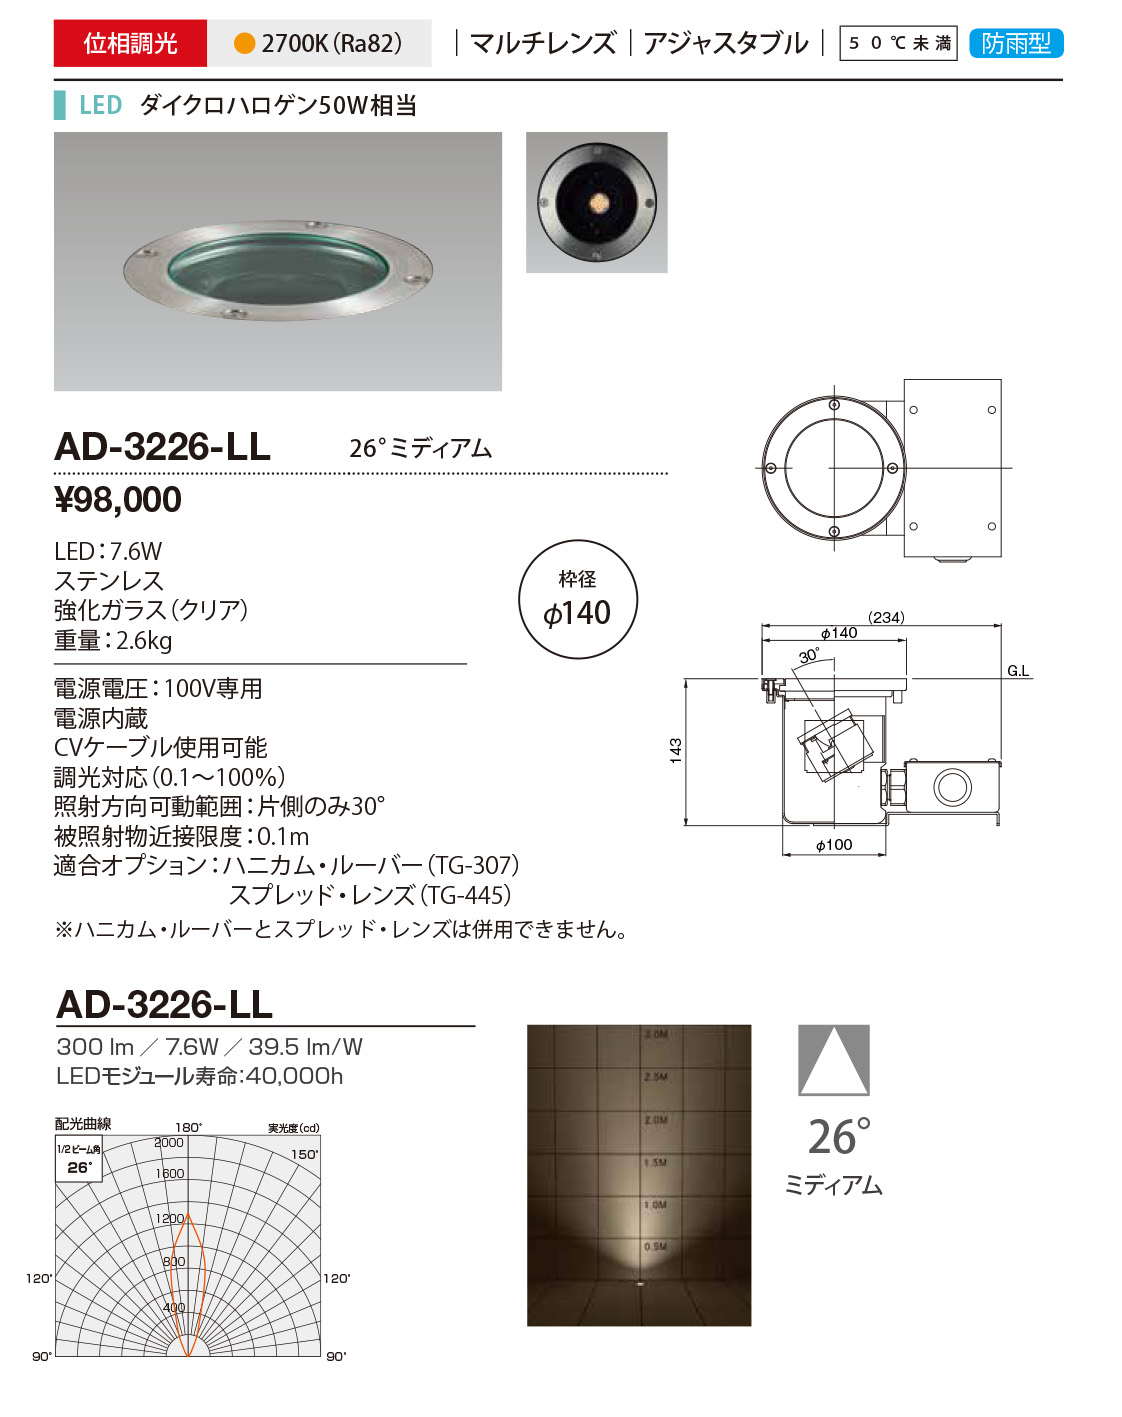 AD-3226-LL RcƖ o[hCg nݏƖ 140 LED dF  26x